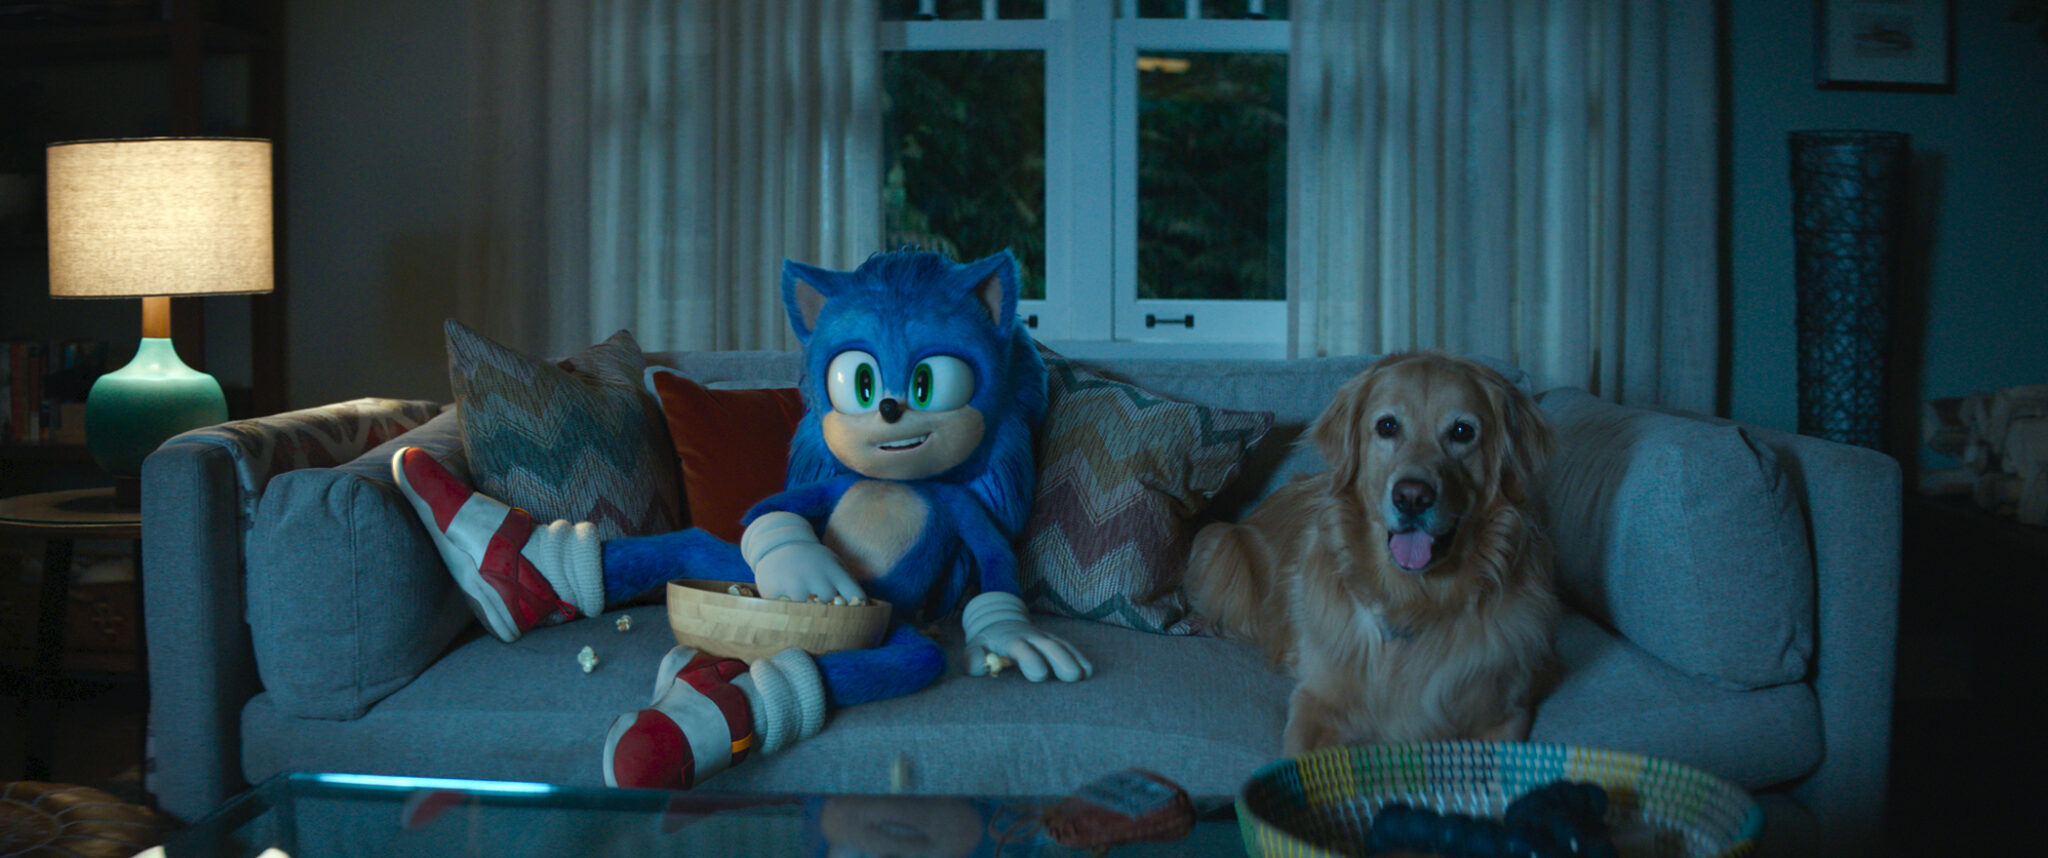 Sonic auf der Couch neben einem Hund beim Fernsehen.